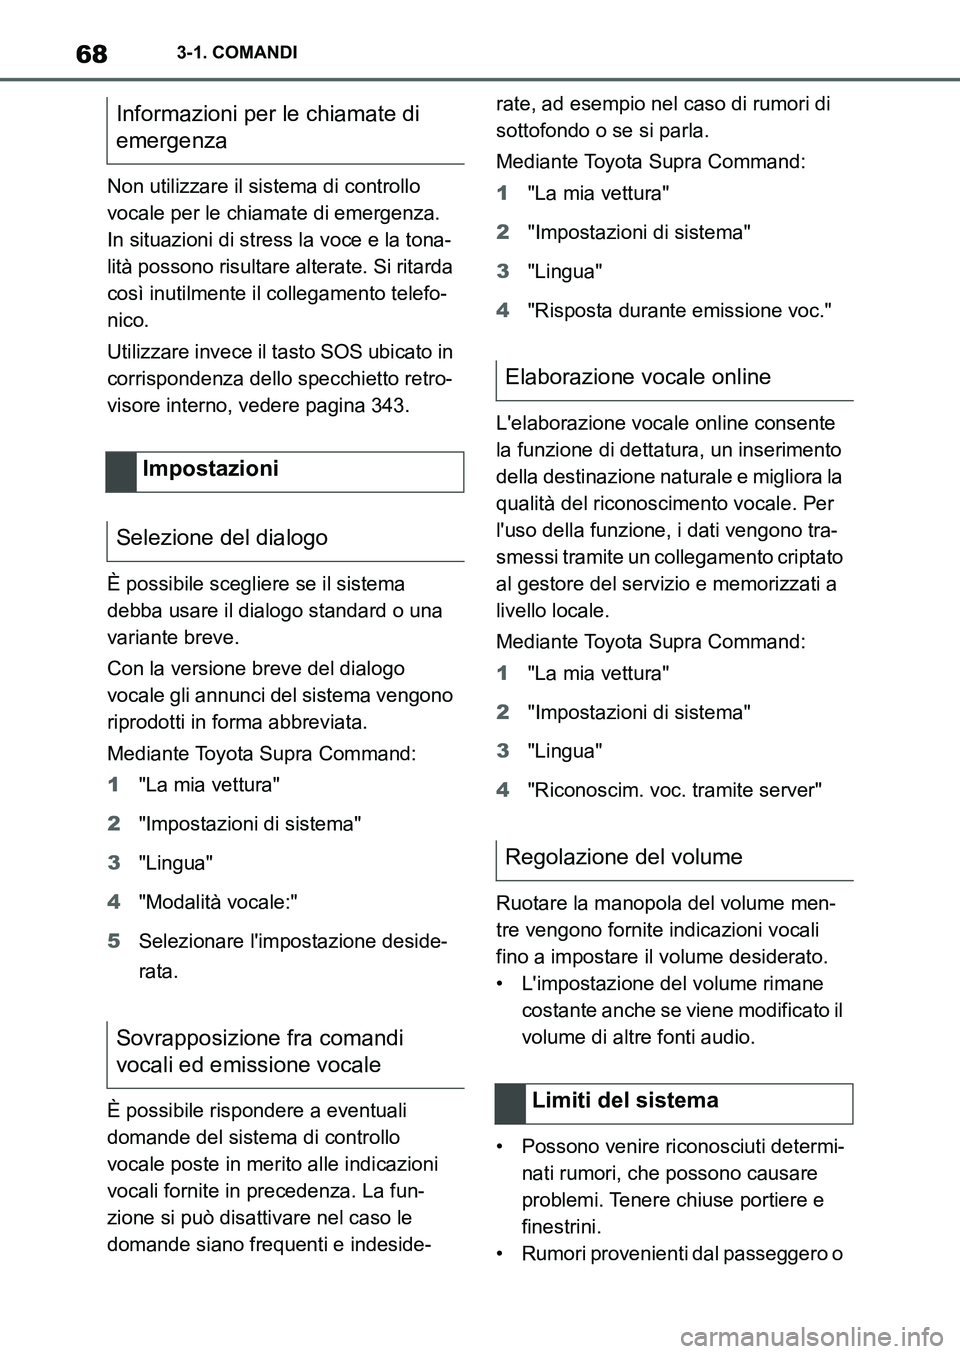 TOYOTA SUPRA 2022  Manuale duso (in Italian) 683-1. COMANDI
Non utilizzare il sistema di controllo 
vocale per le chiamate di emergenza. 
In situazioni di stress la voce e la tona-
lità possono risultare alterate. Si ritarda 
così inutilmente 